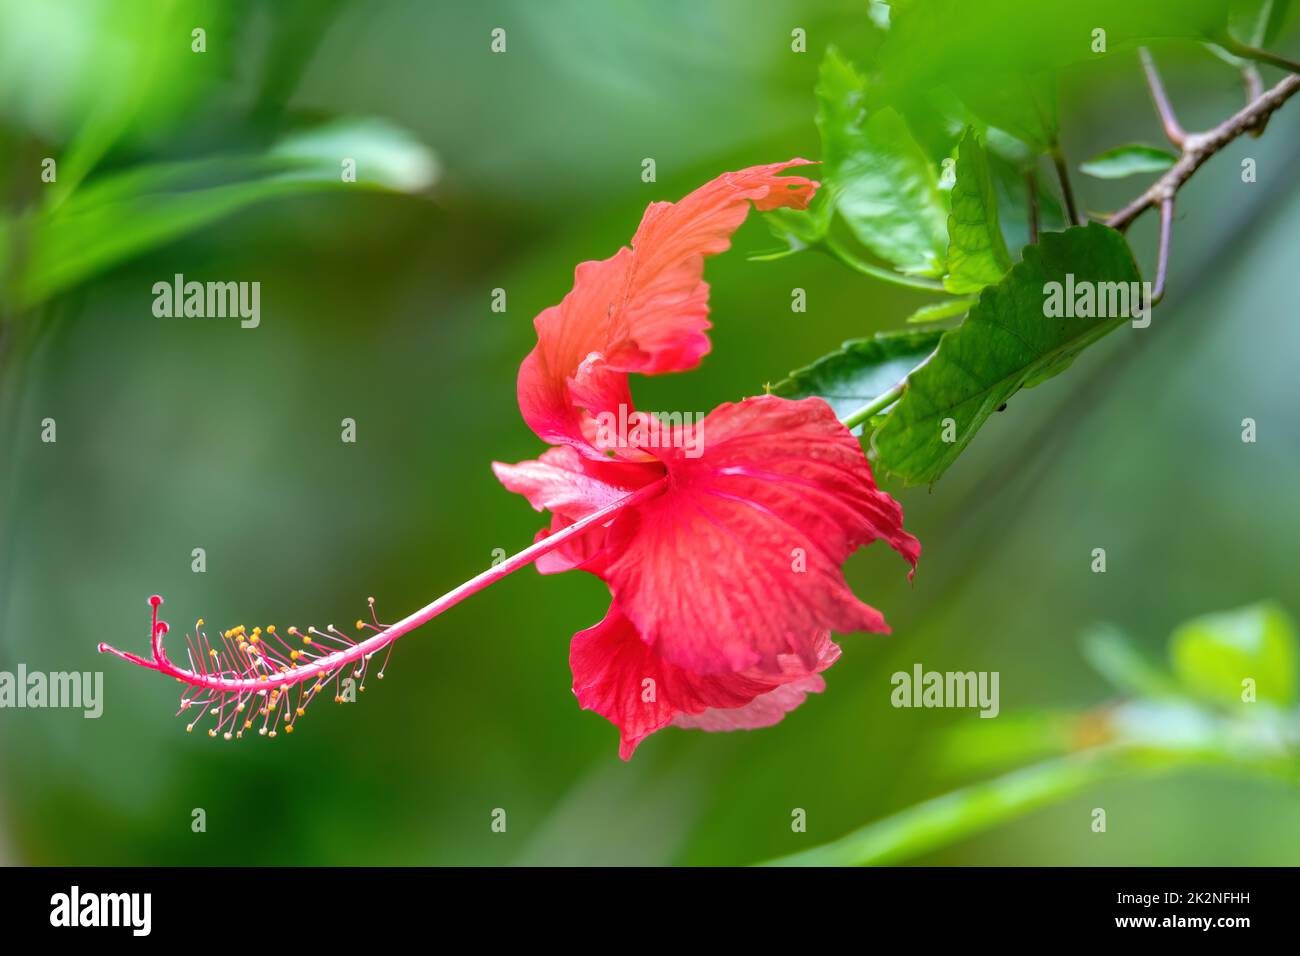 Red Hibiscus flower, Quepos, Costa Rica Stock Photo